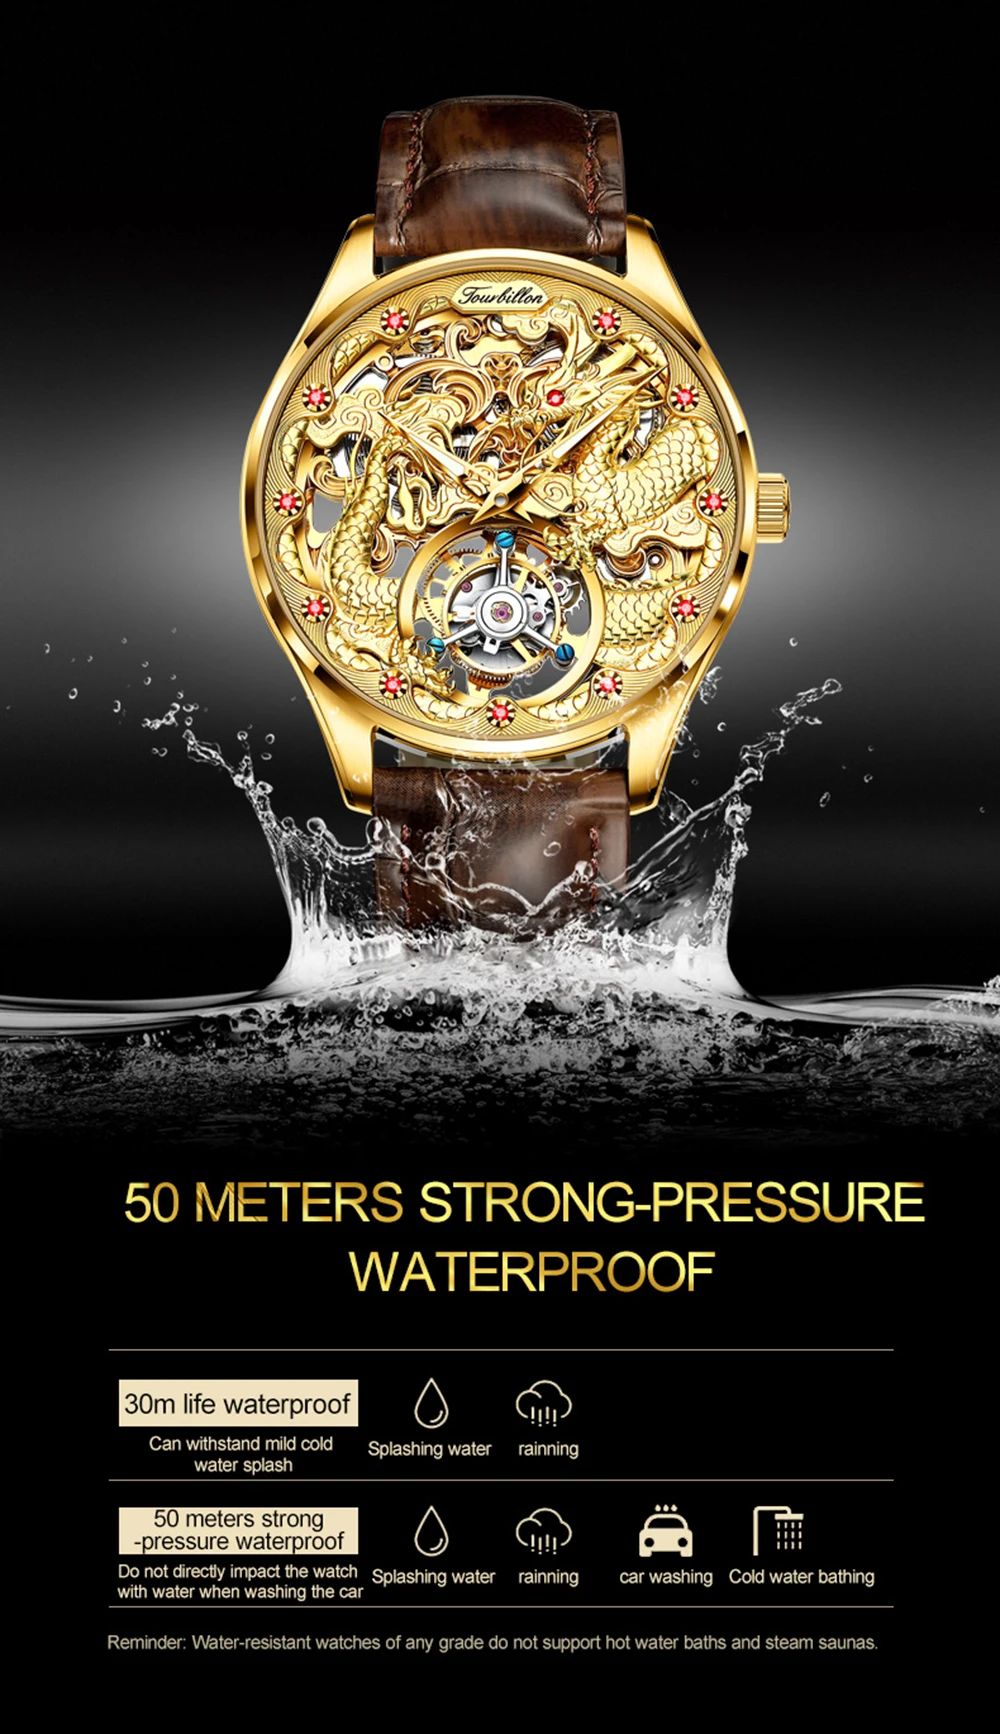 OUPINKE luxury brand watches | 2mrk Sale Online